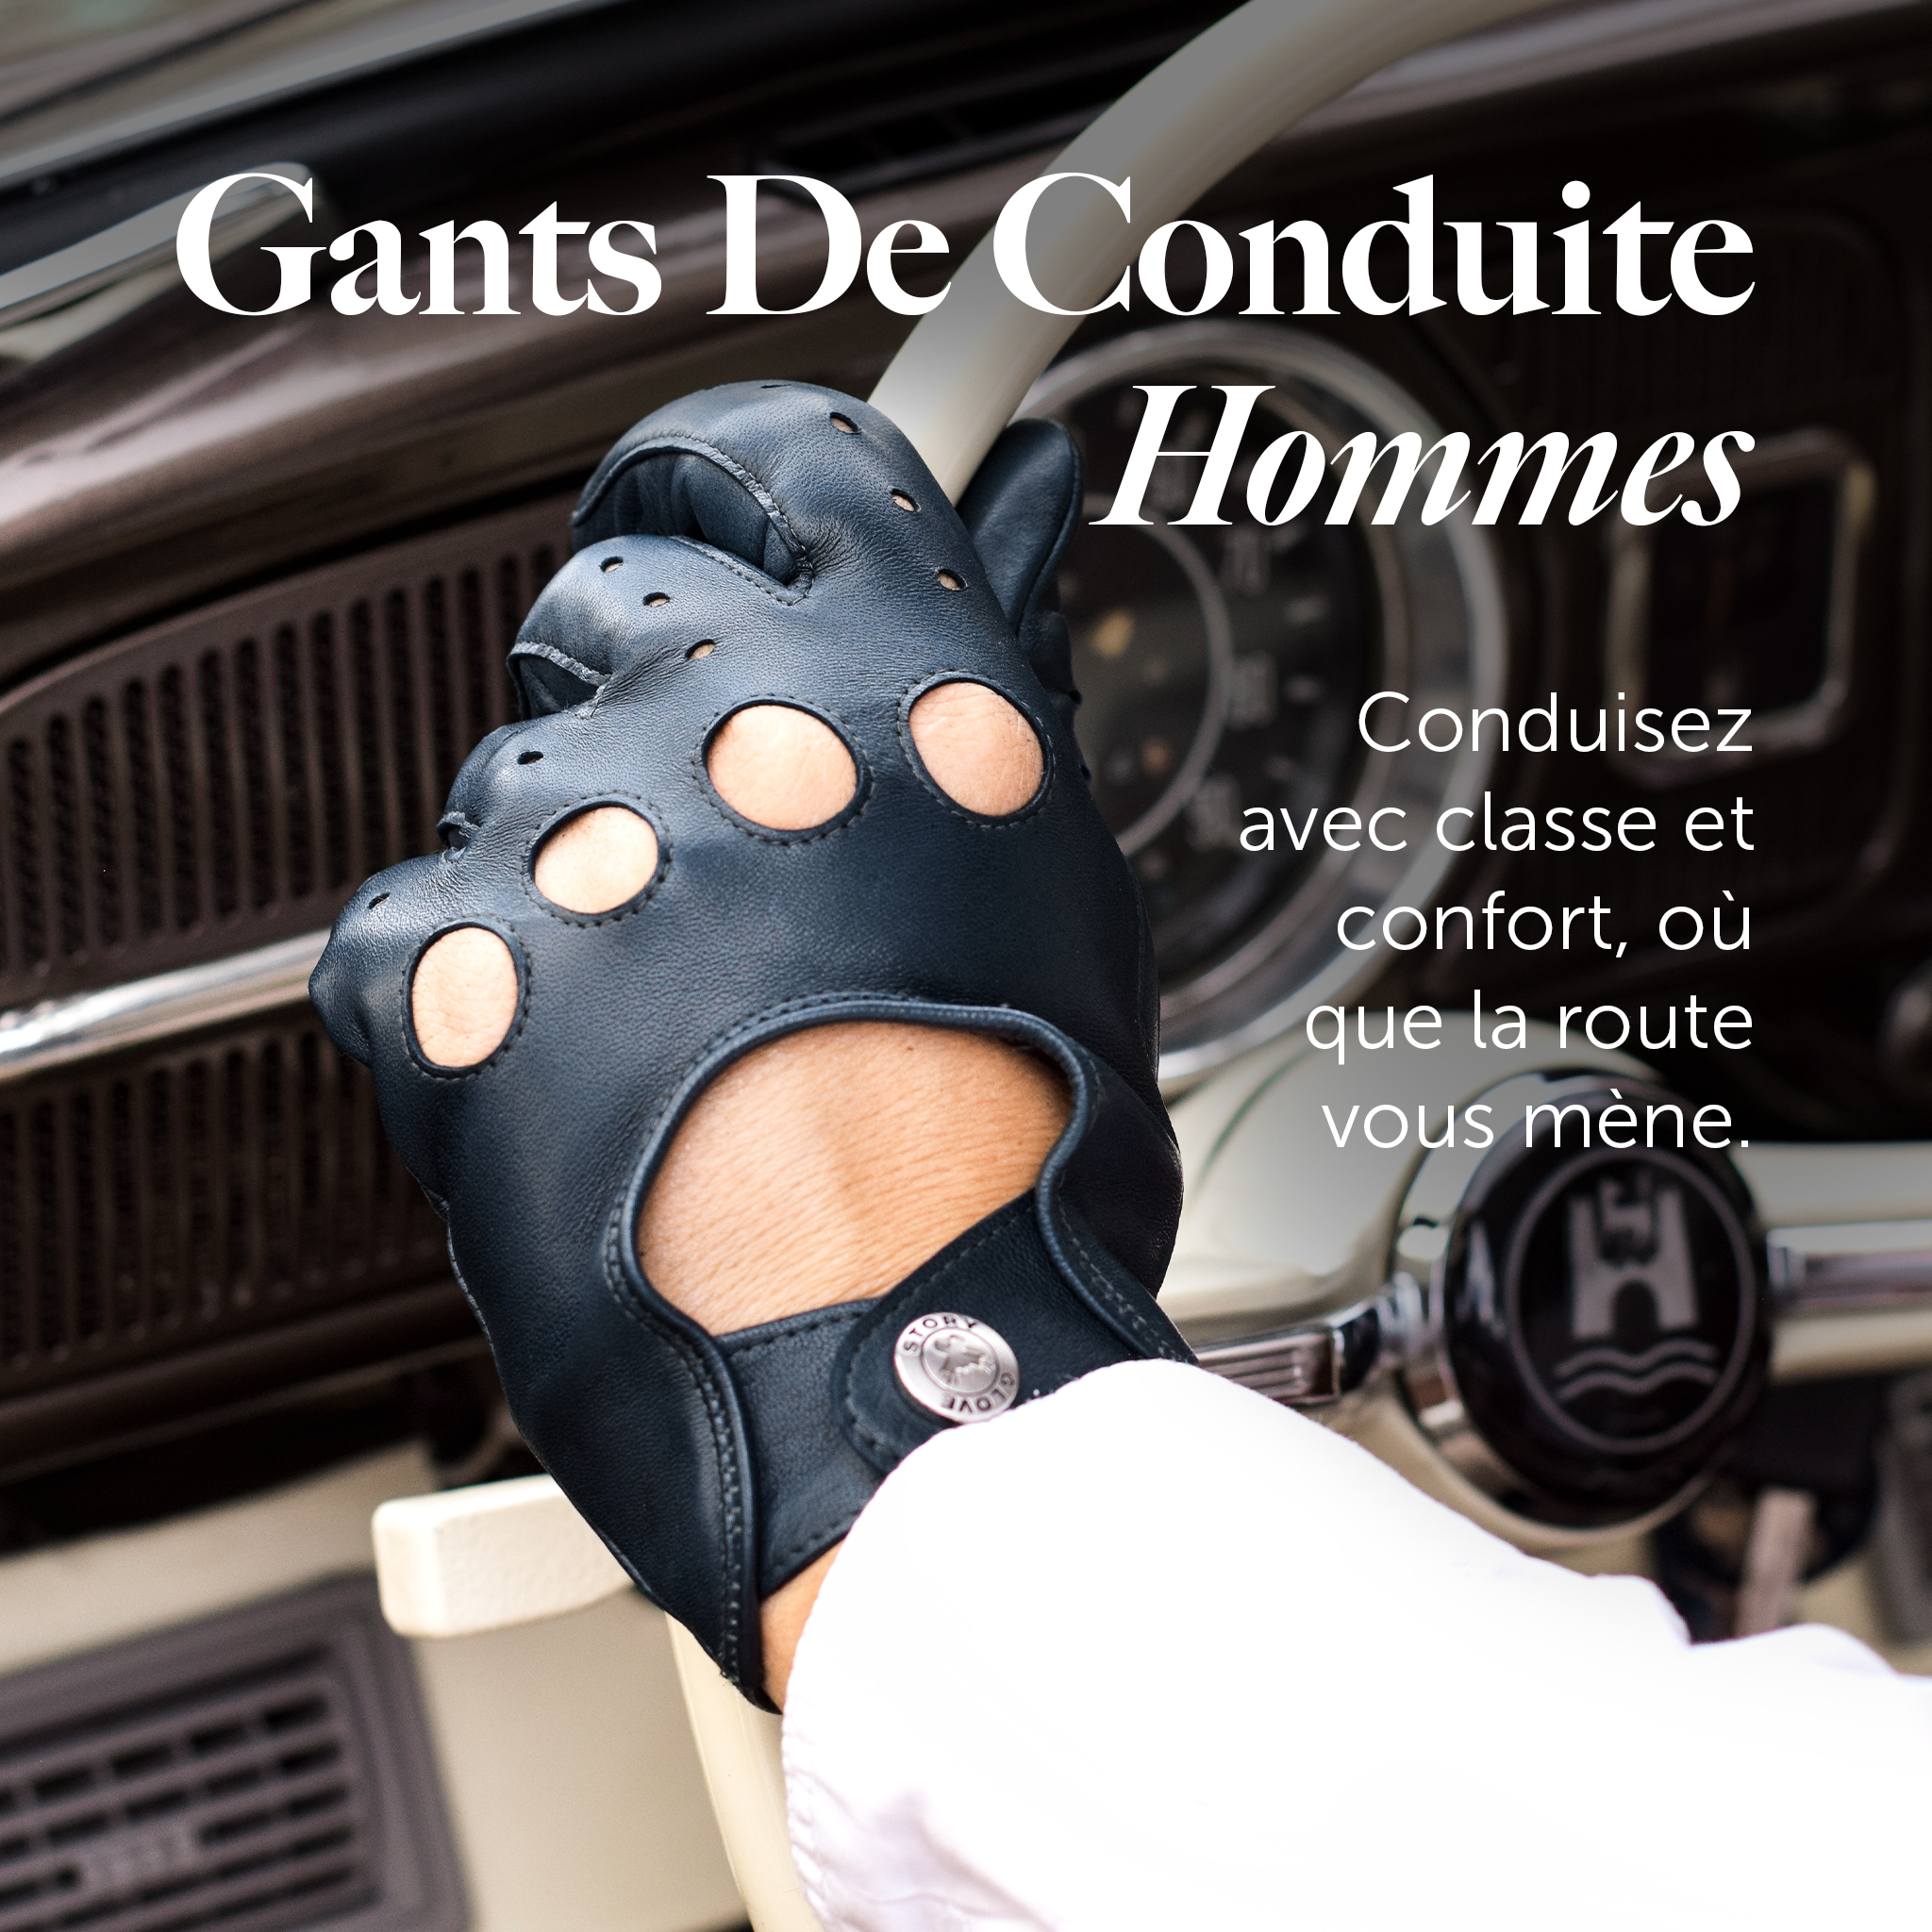 Gants De Conduite Pour Homme Conduisez avec classe et confort, où que la route vous mène.